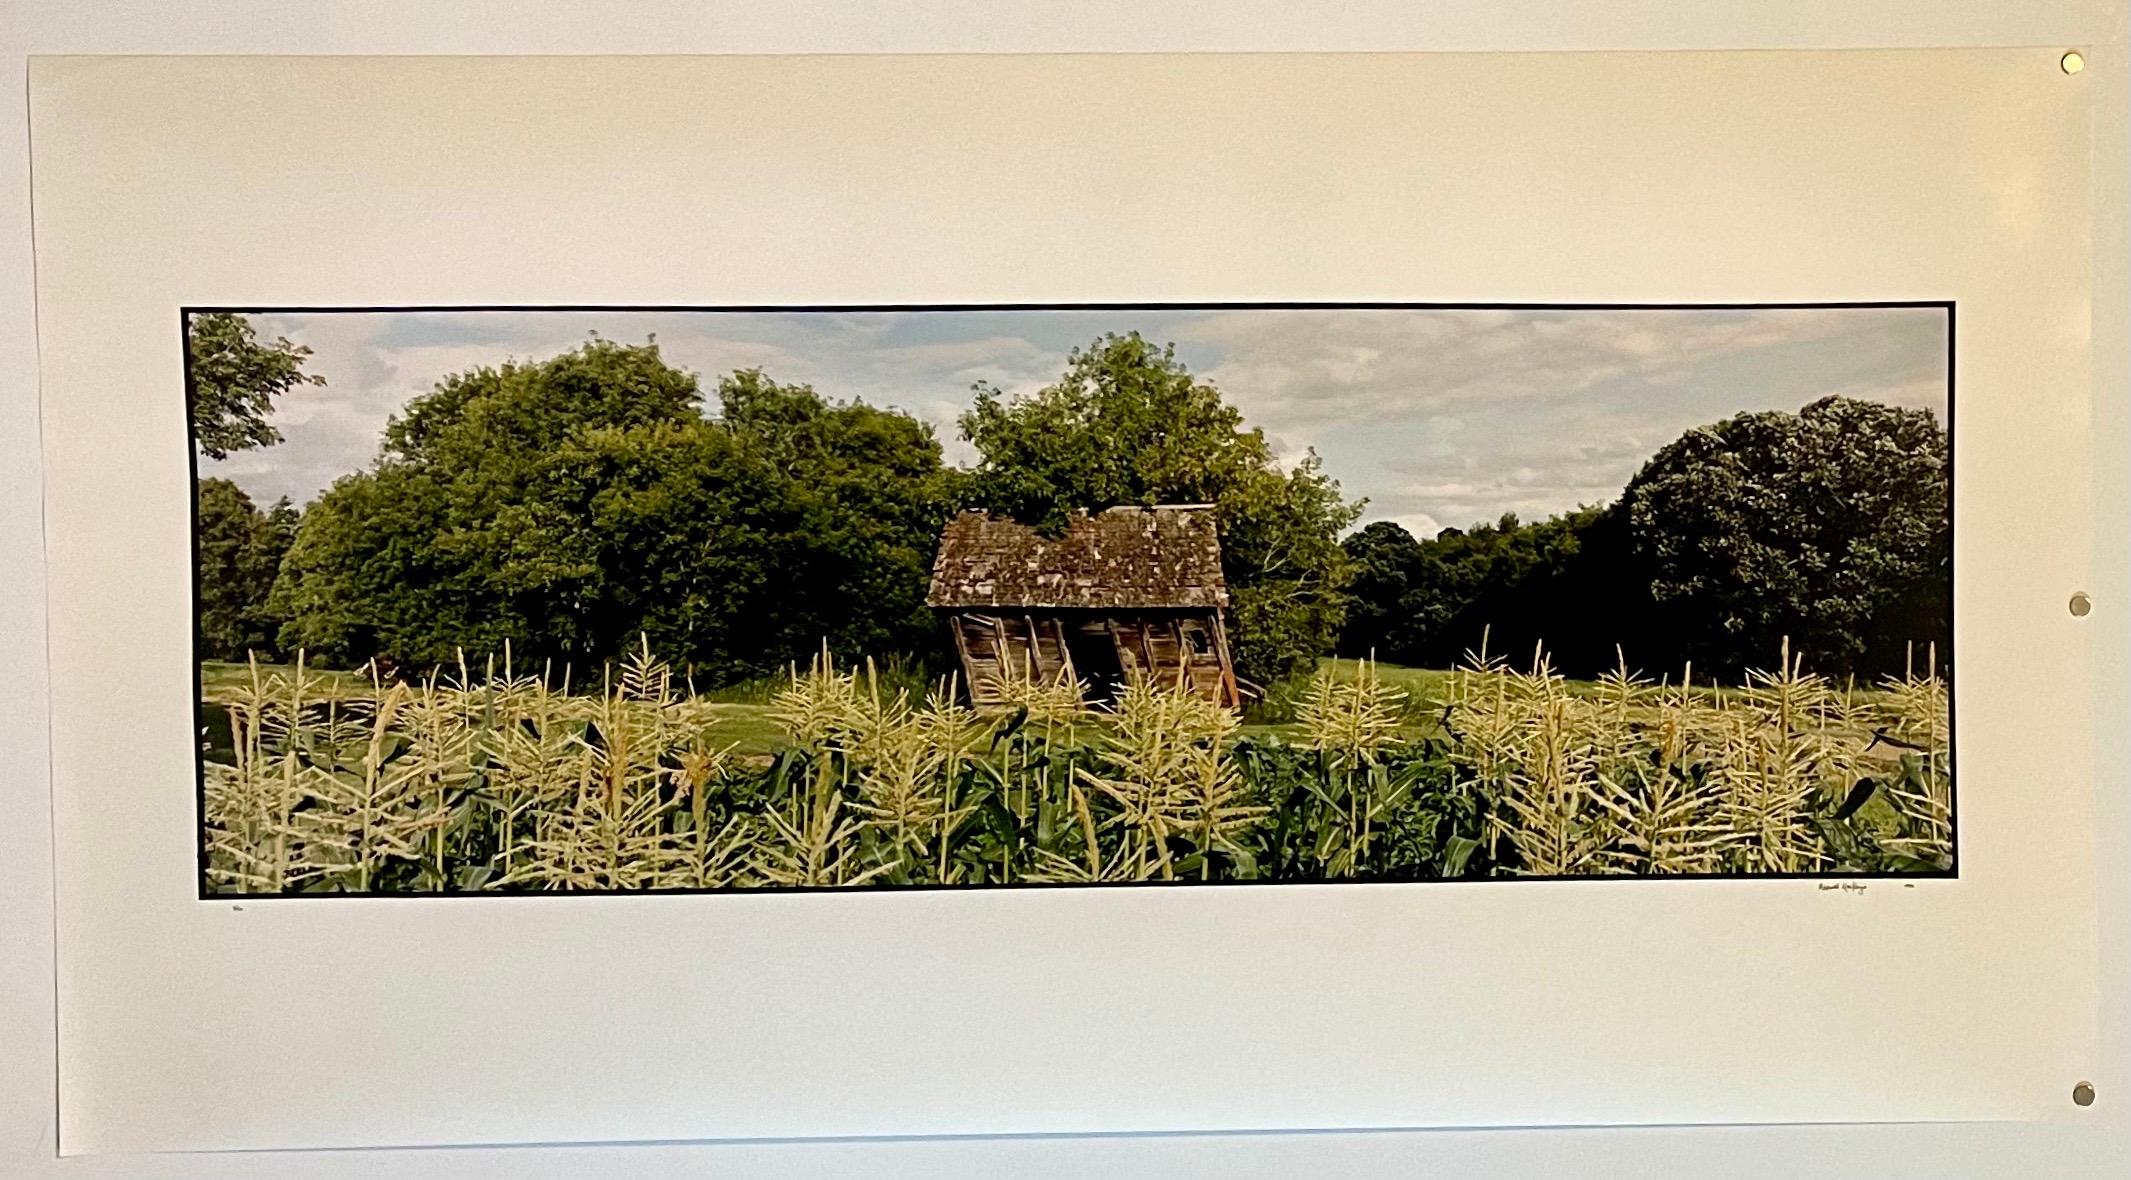 La ferme, paysage d'été, grande photographie couleur vintage en panneau, signée - Réalisme américain Photograph par Maxwell Mackenzie